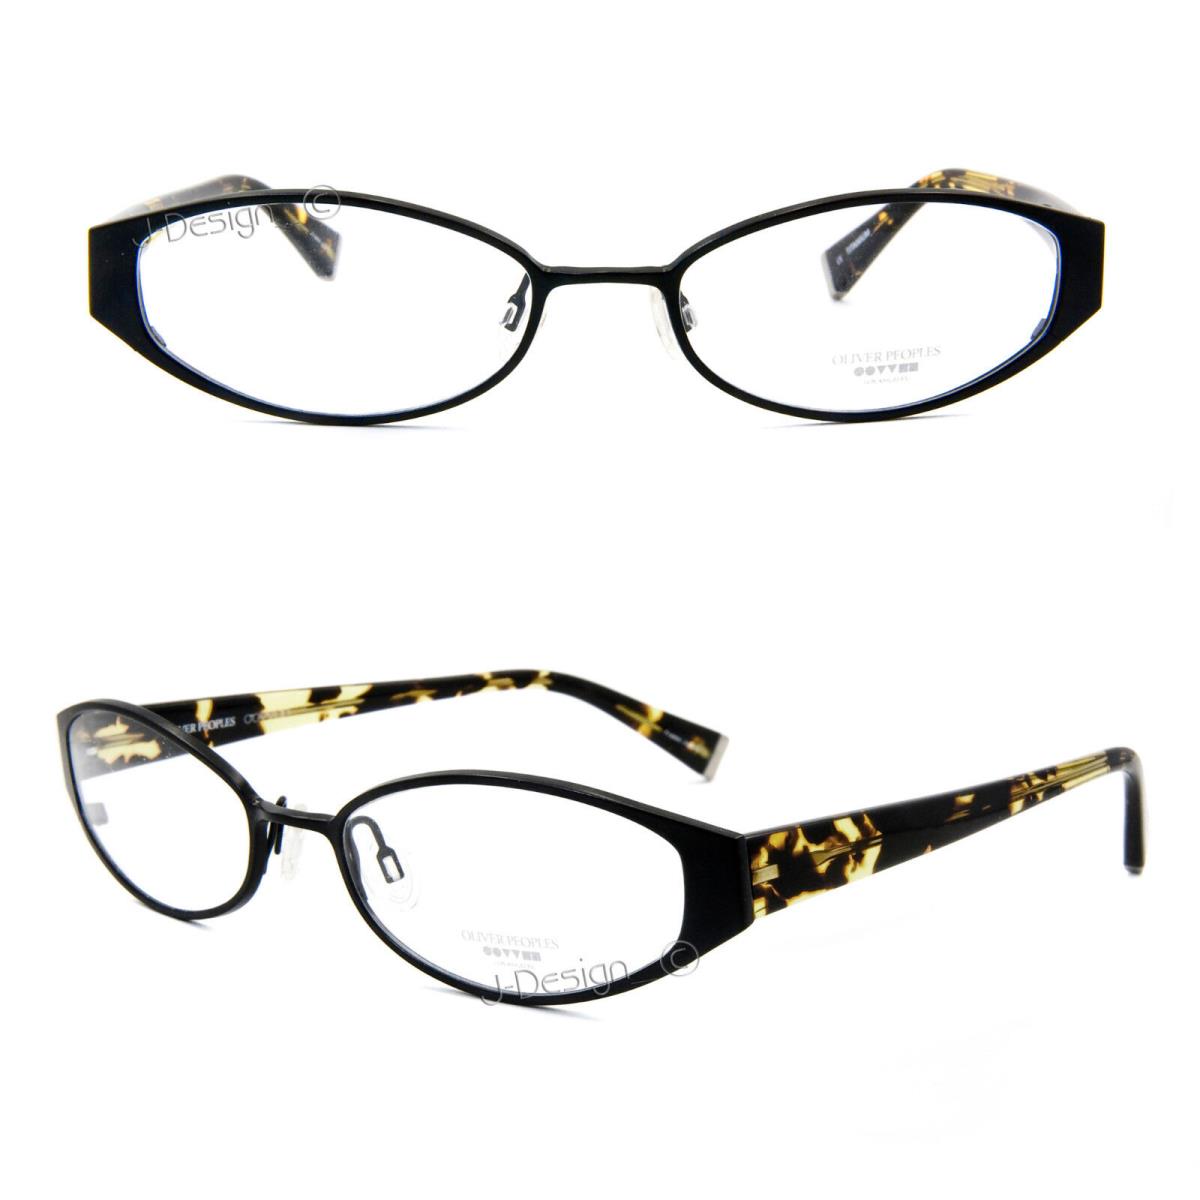 Oliver Peoples Treasure Mbk Titanium Matte Black 52/17/135 Eyeglasses Japan - Matte Black Frame, Clear Lens